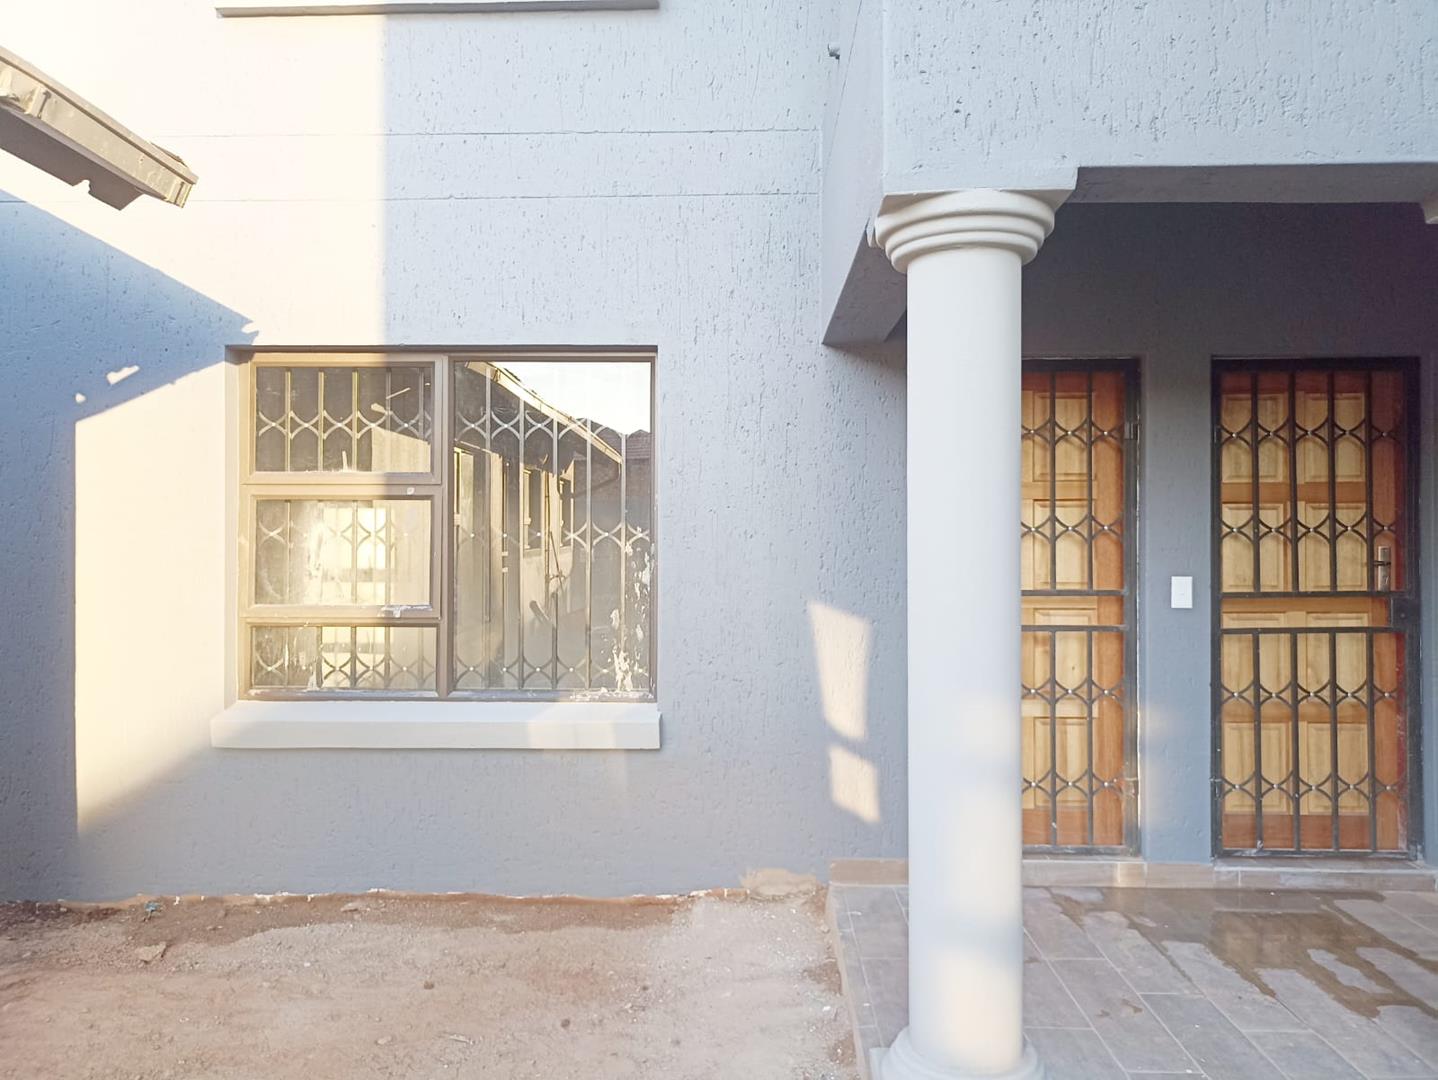 To Let 0 Bedroom Property for Rent in Vosloorus Gauteng